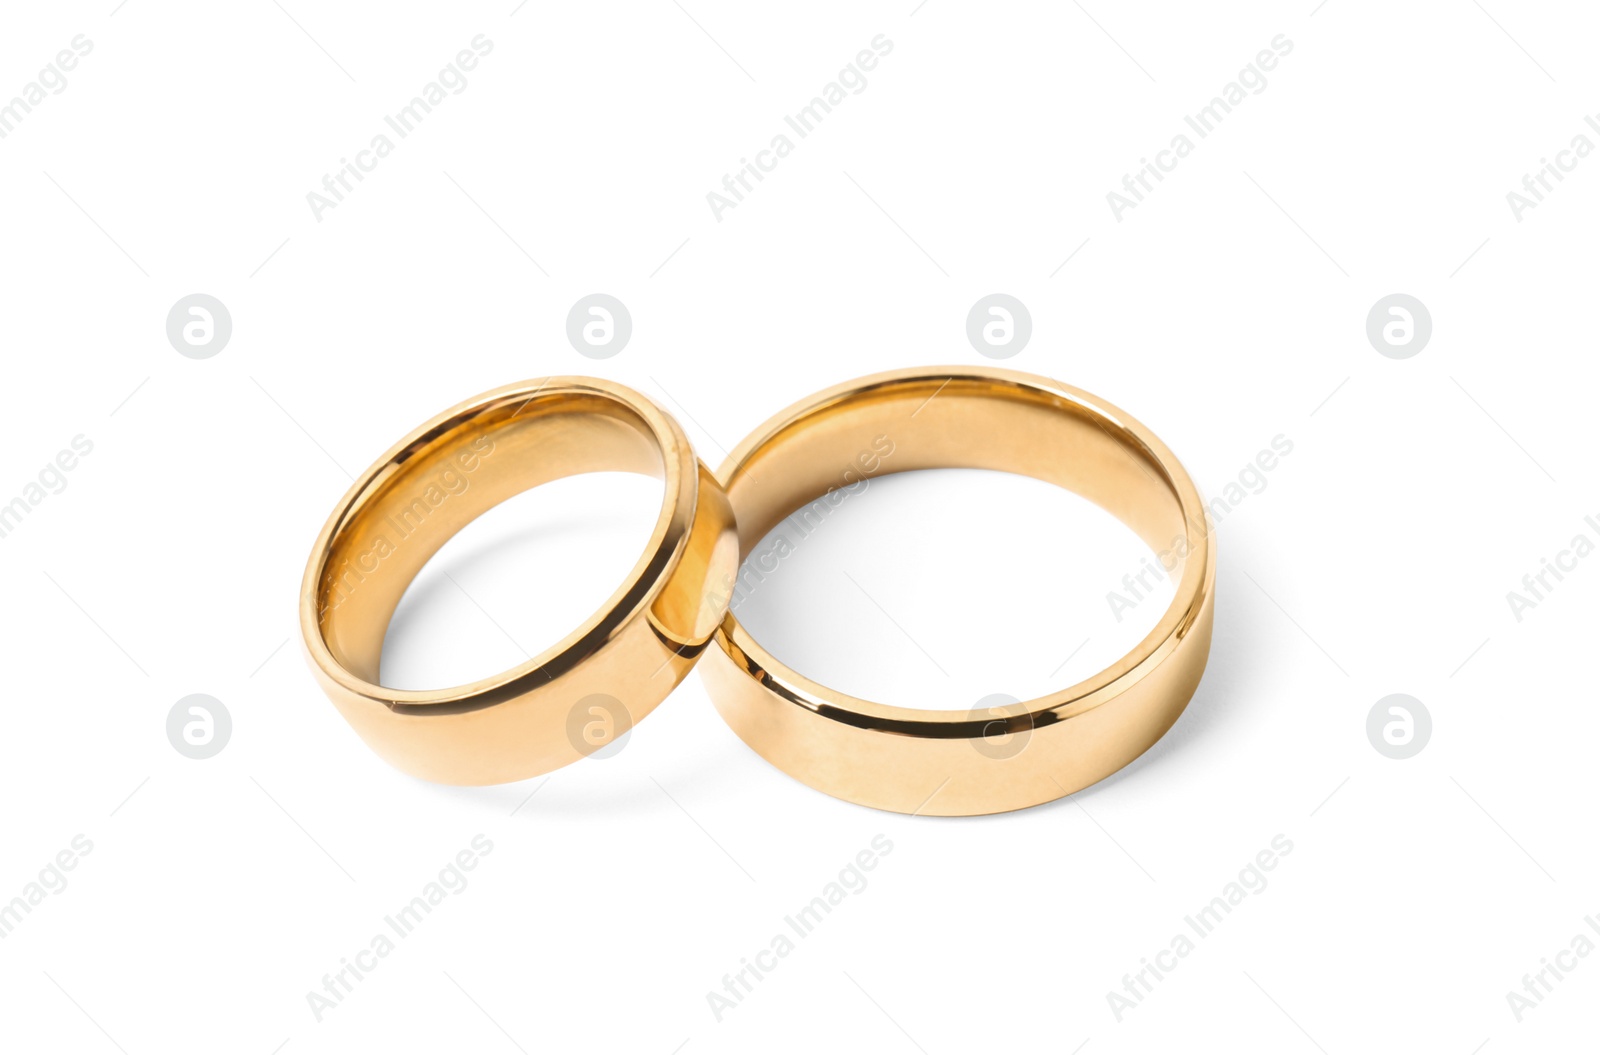 Photo of Shiny gold wedding rings on white background